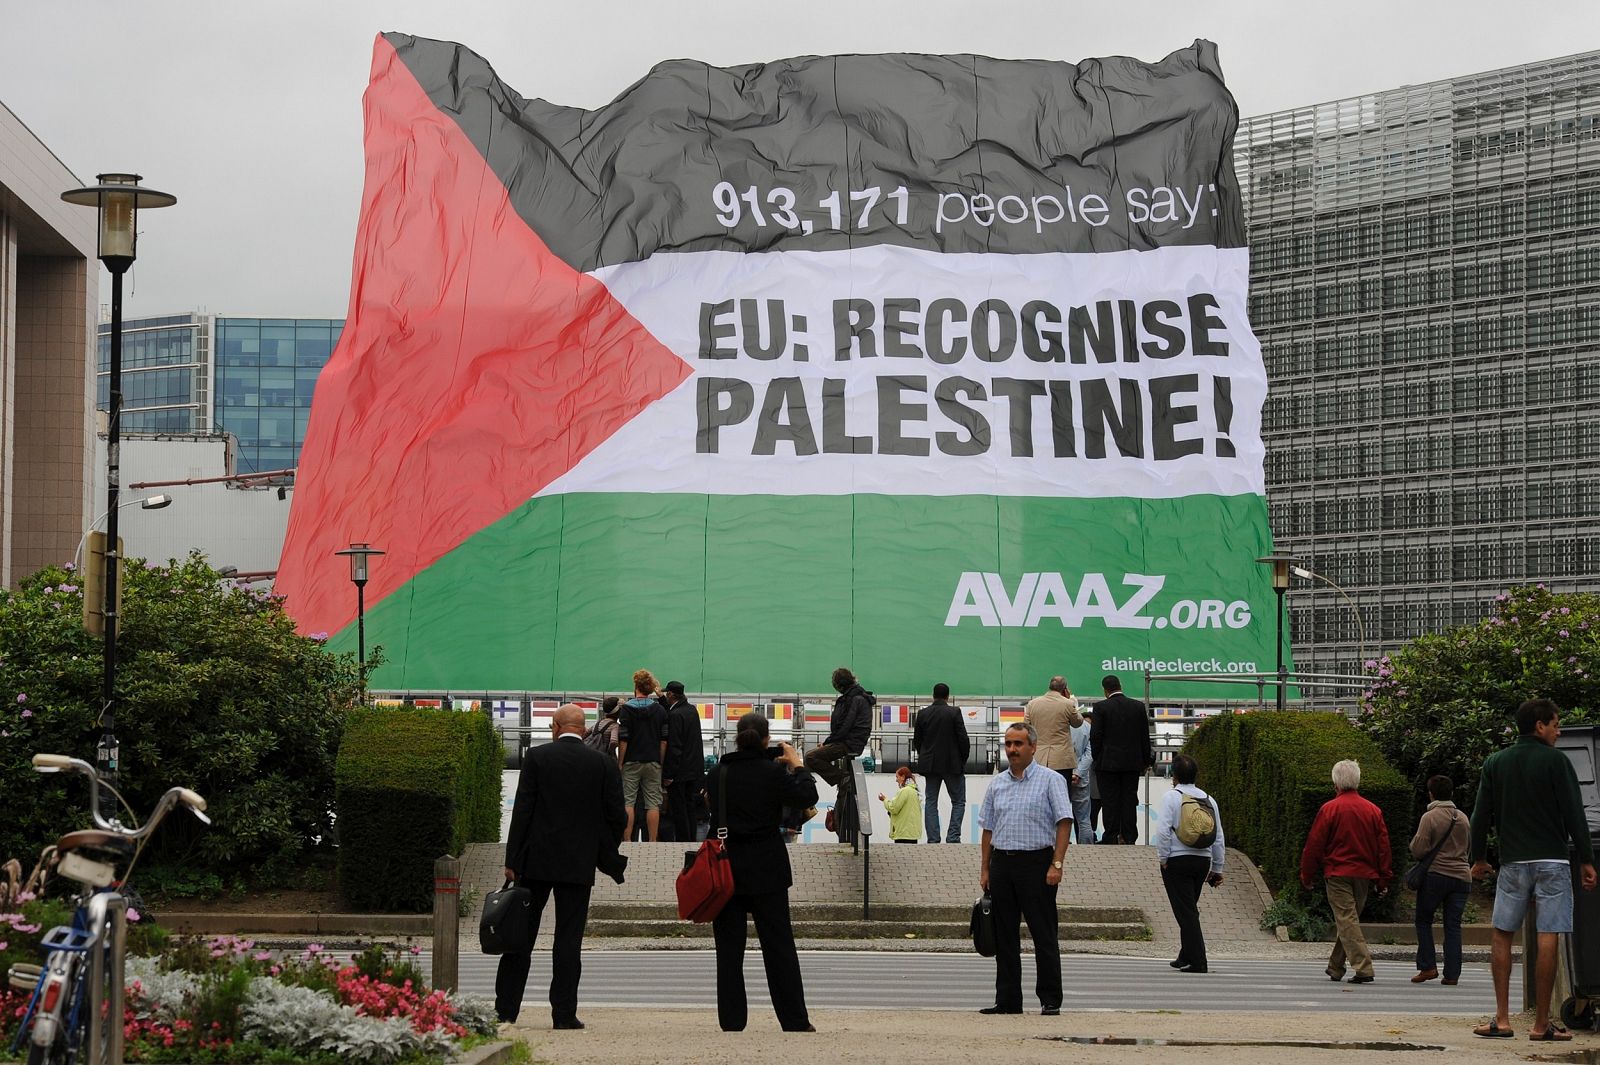 Un bandera palestina de la campaña para apoyar su reconocimiento como estado, frente a la sede de la UE en Bruselas